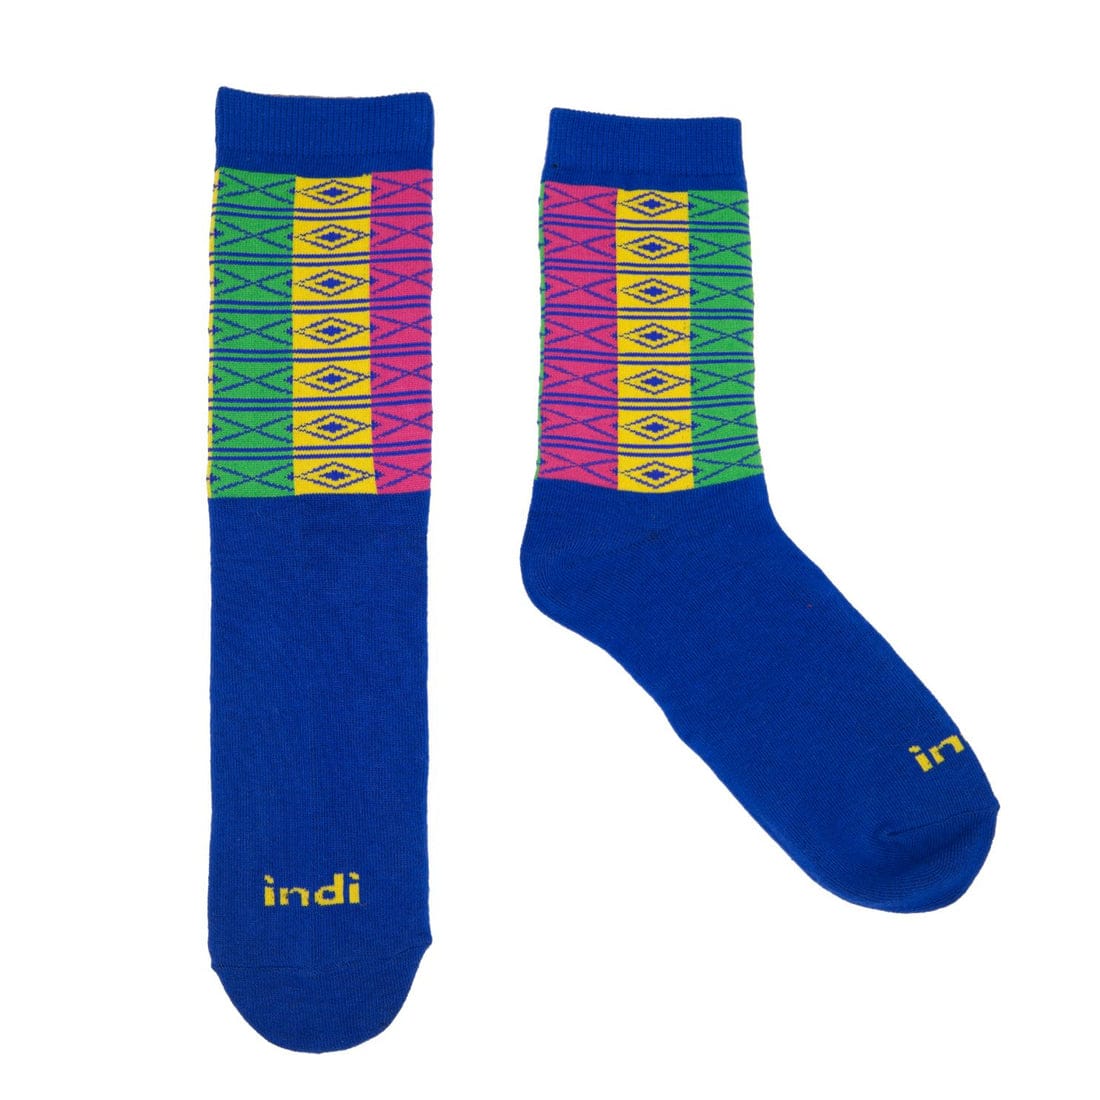 Gahhilang - INDI Heritage Socks (Adult)